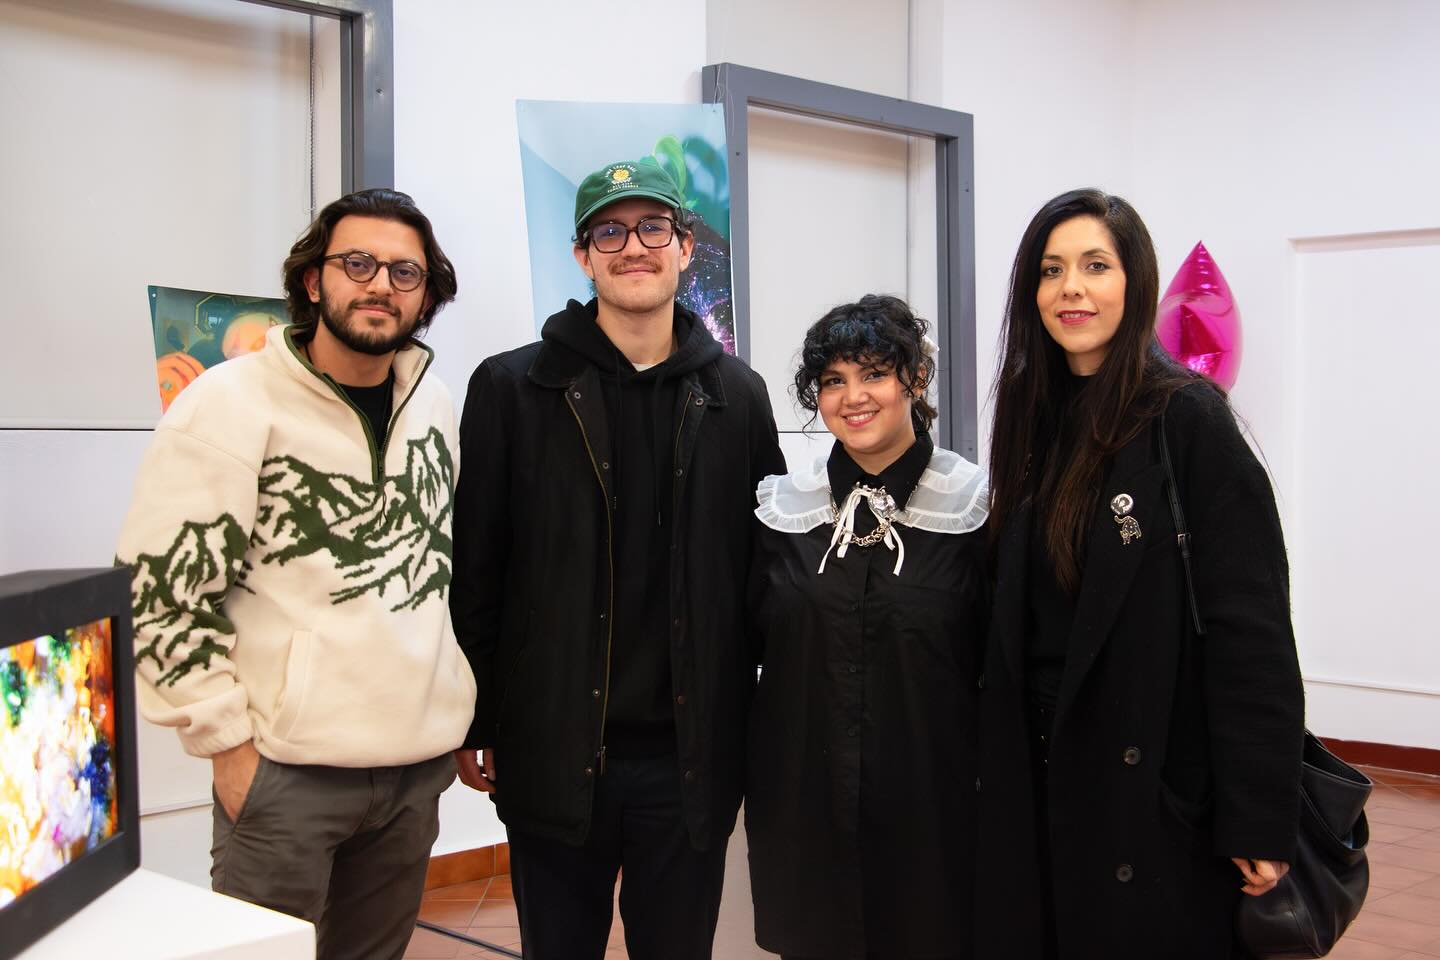 Cuatro entusiastas del arte posan juntos en una exposición, sus estilos personales únicos complementan el ambiente creativo de la galería.